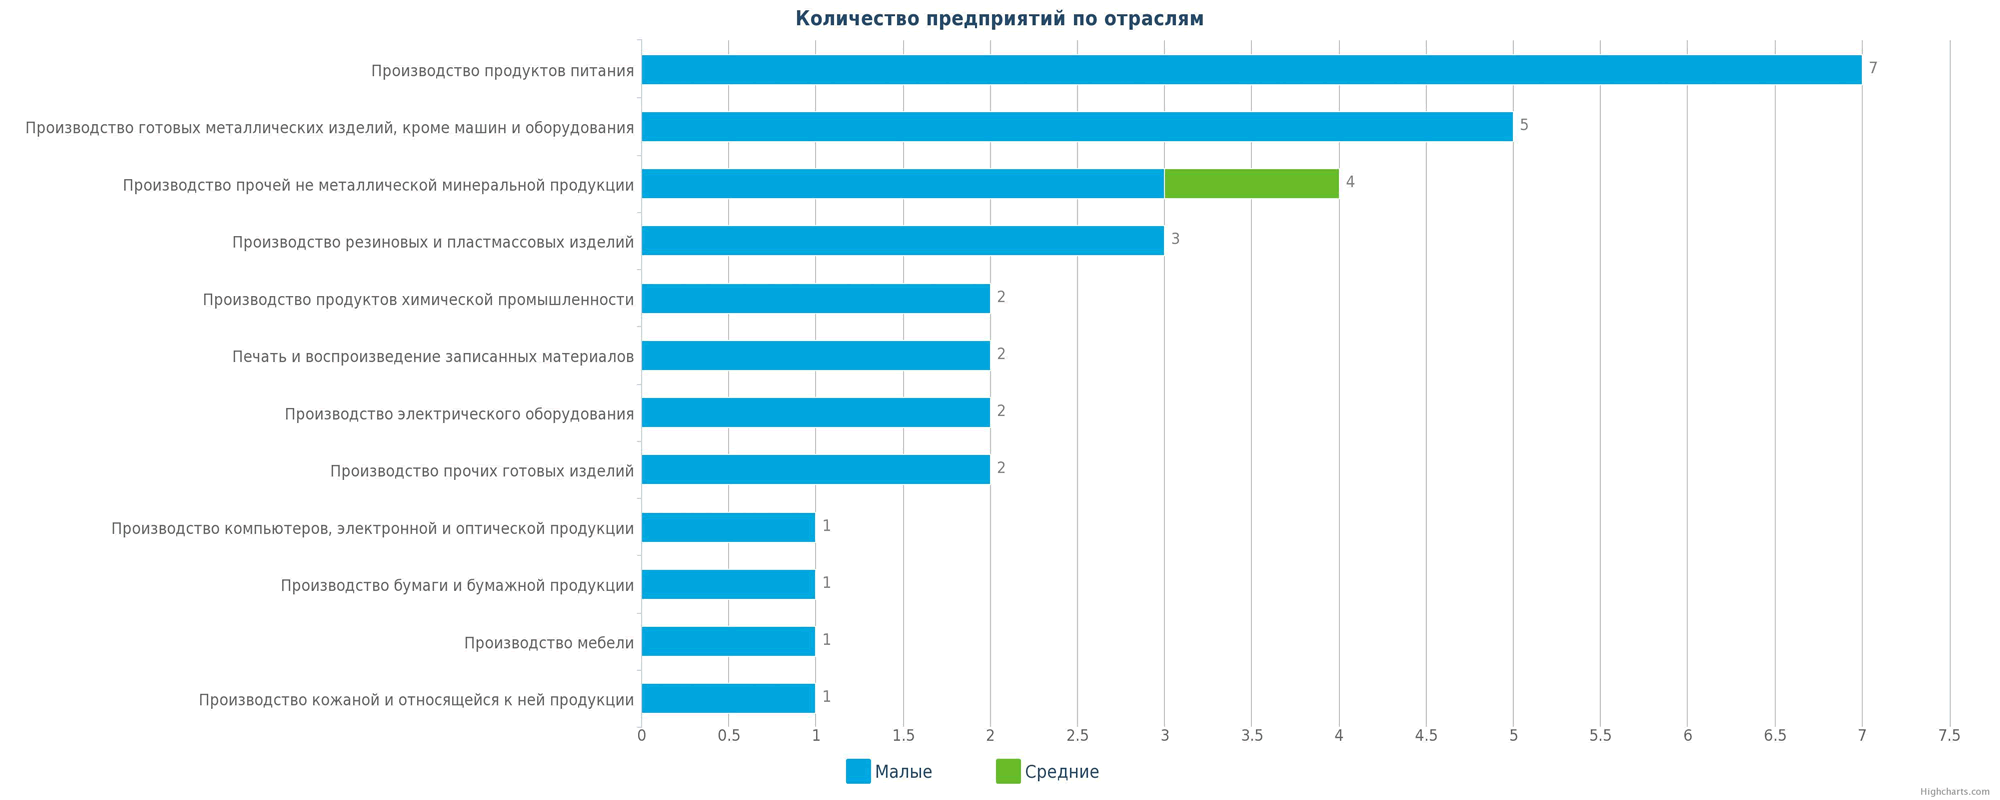 Смотря сколько фабрик сколько дитейлс. Екатеринбург заводы и предприятия список. Самые популярные отрасли бизнеса в Казахстане.